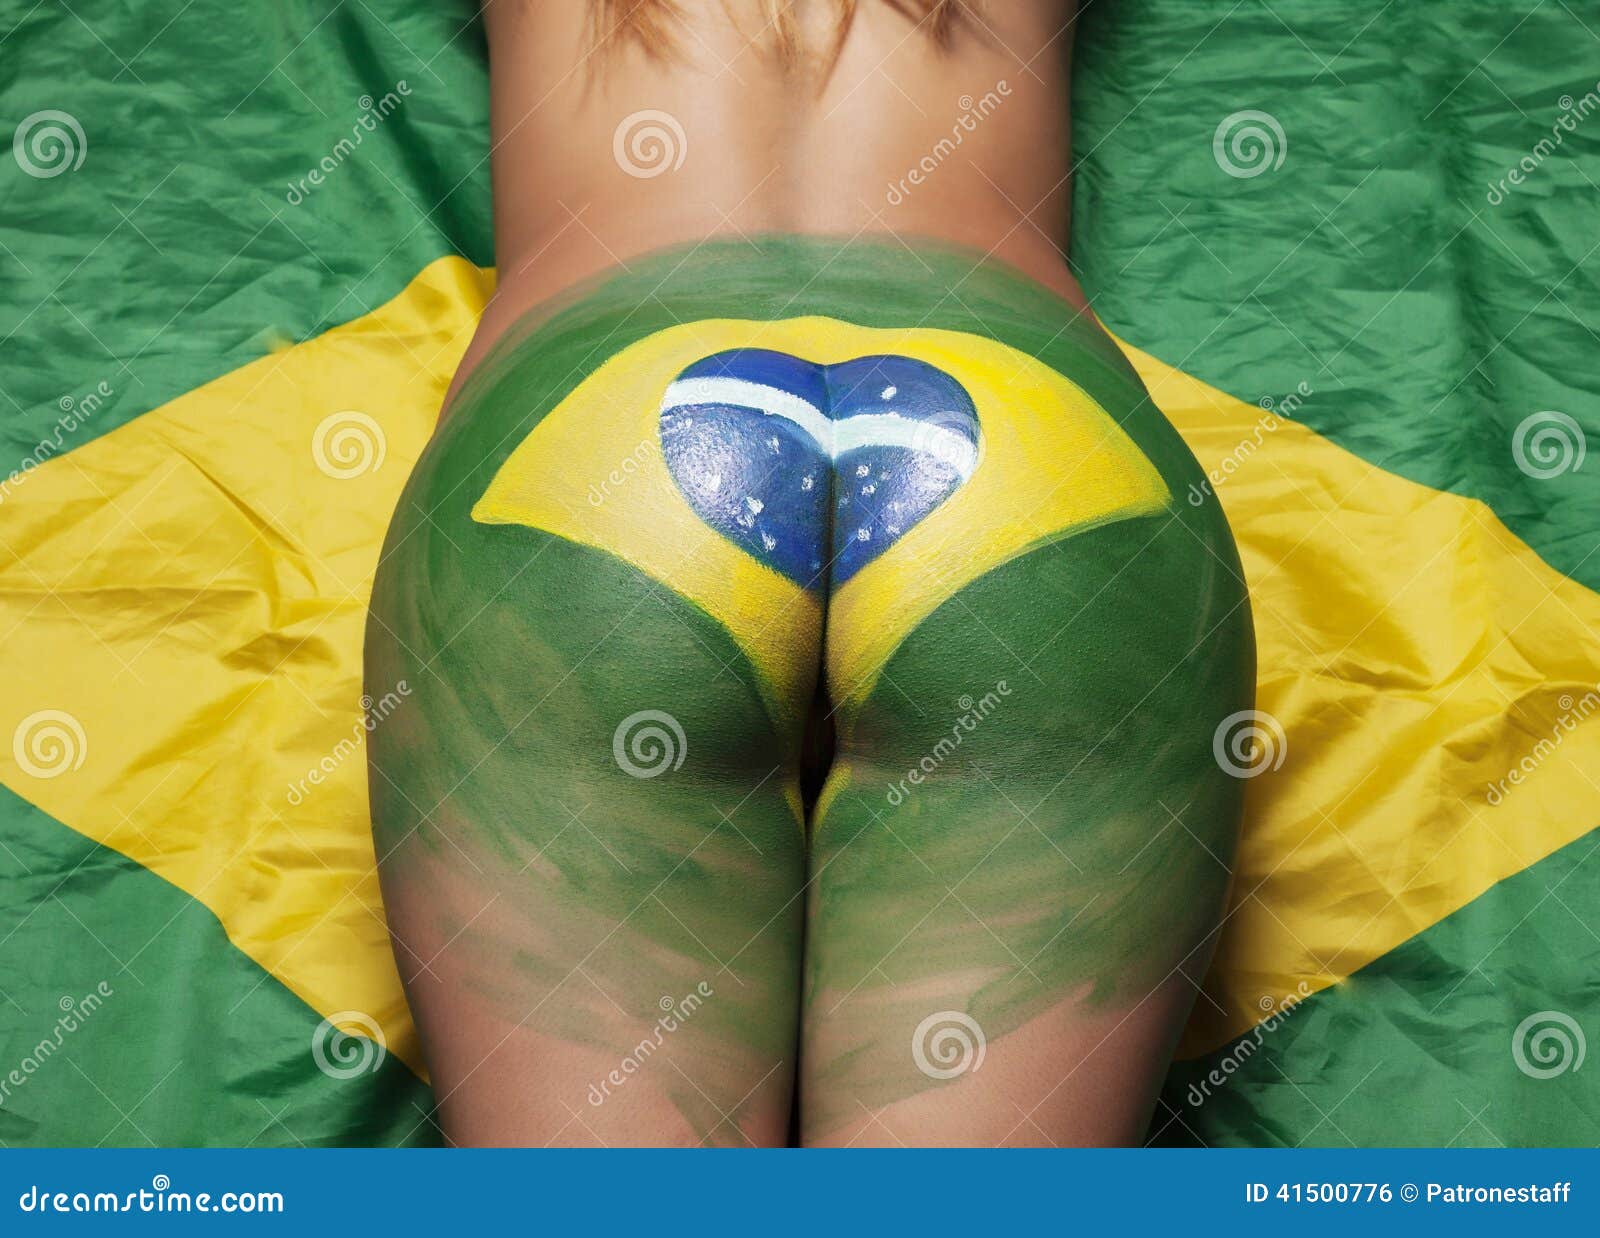 Wet brazillian ass